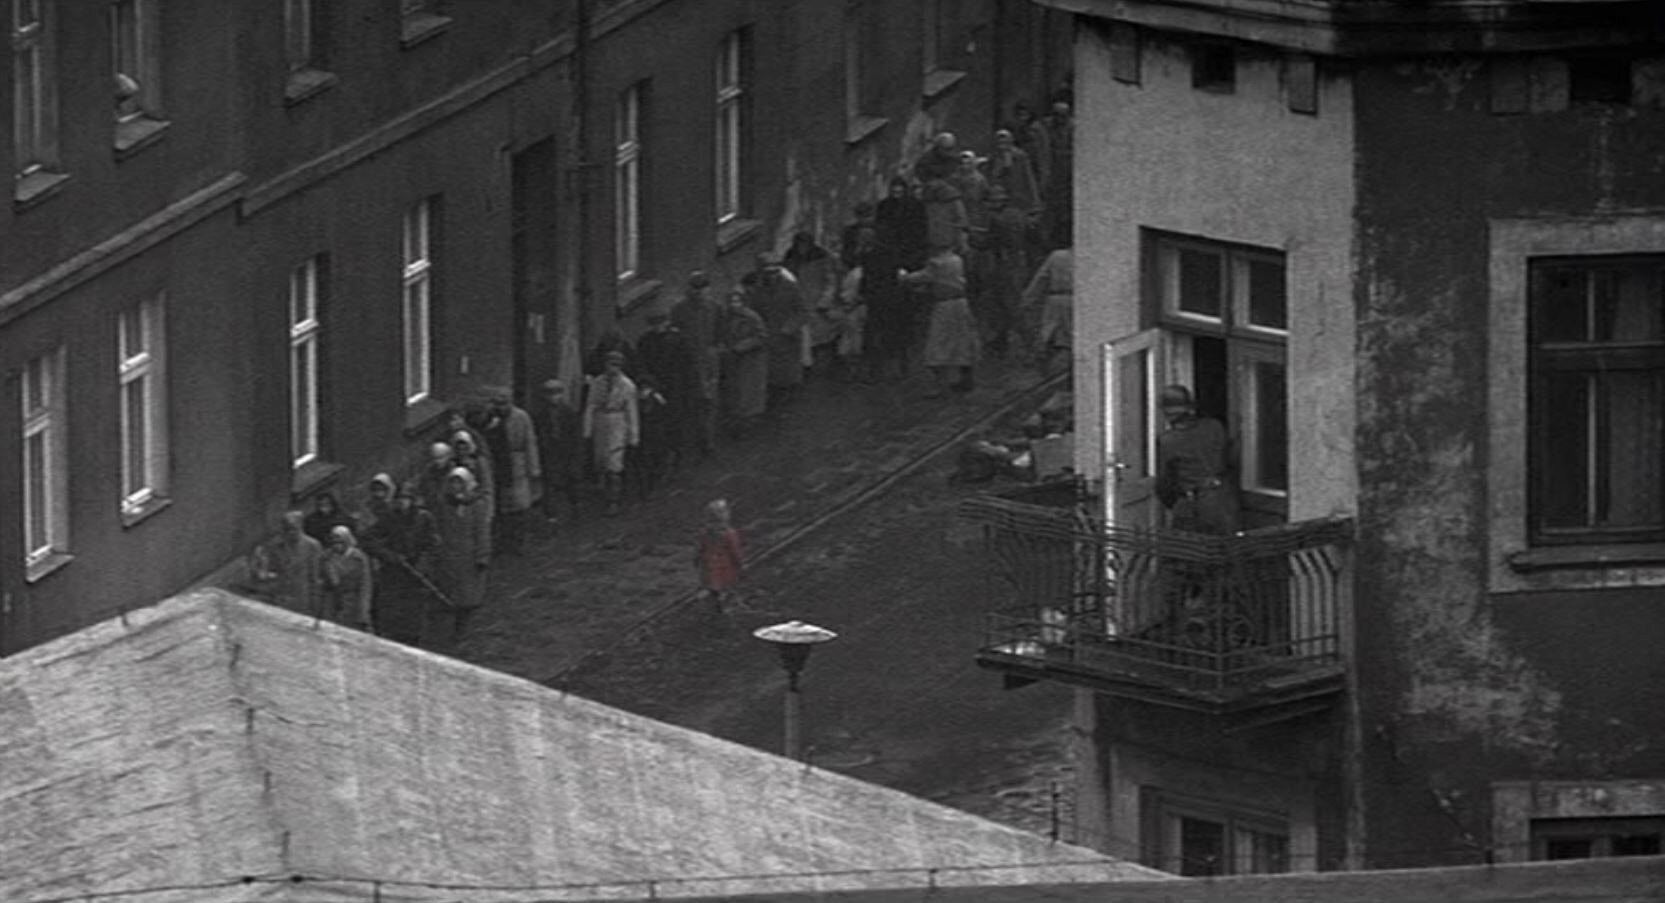 Zdjęcie czarno-białe przedstawia ulicę. Idą nią chodnikiem ludzie eskortowani przez niemieckich żołnierzy. Środkiem ulicy idzie mała dziewczynka w czerwonym płaszczyku.